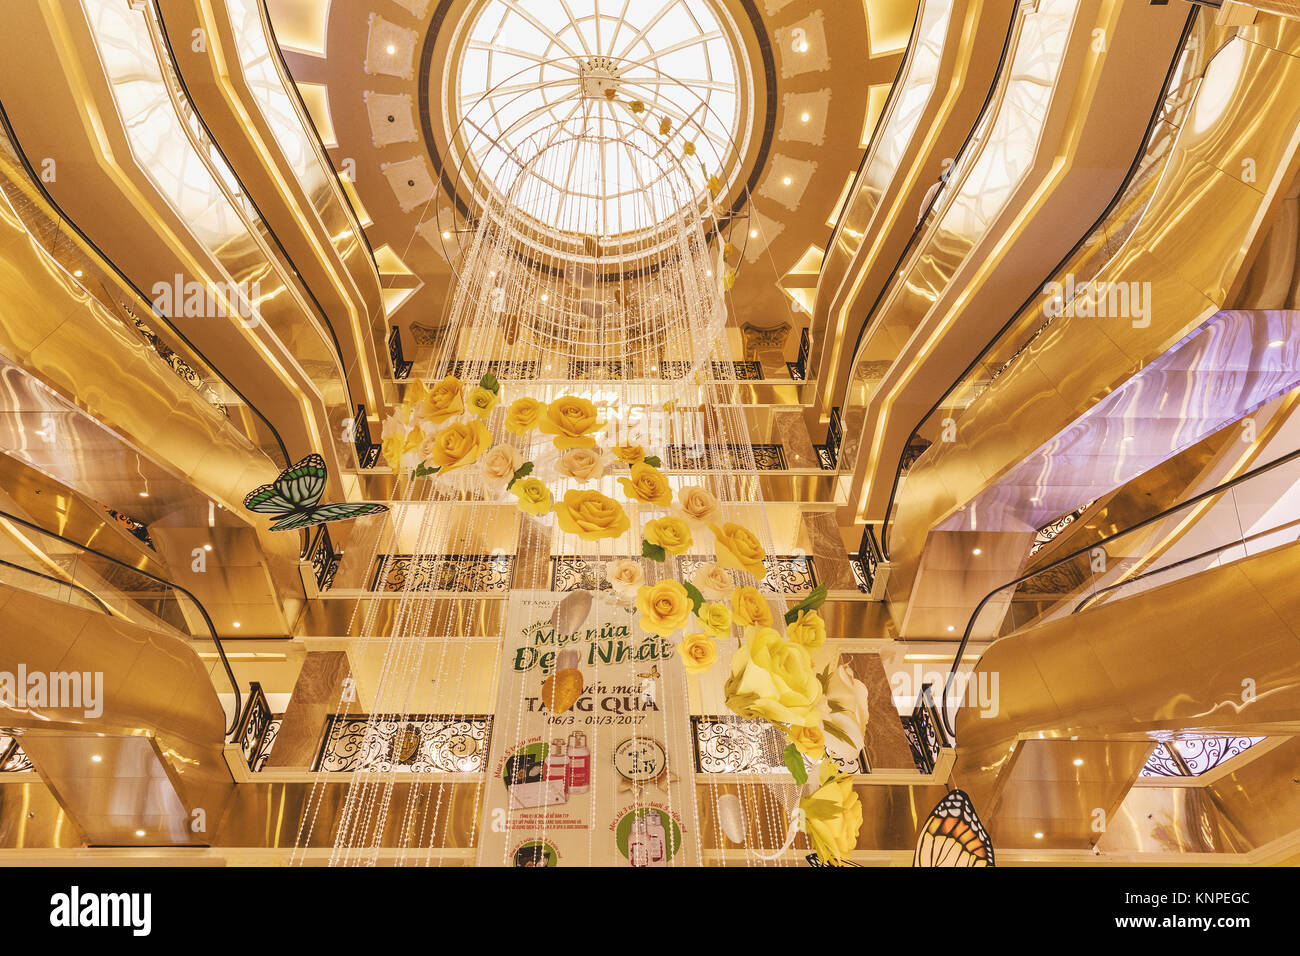 HANOI, VIETNAM - März 08., 2017. Das Innere eines Luxus Shopping mall Trang Tien Plaza, Grand aus der französischen Kolonialzeit Jugendstil. Hanoi, Vietnam Stockfoto